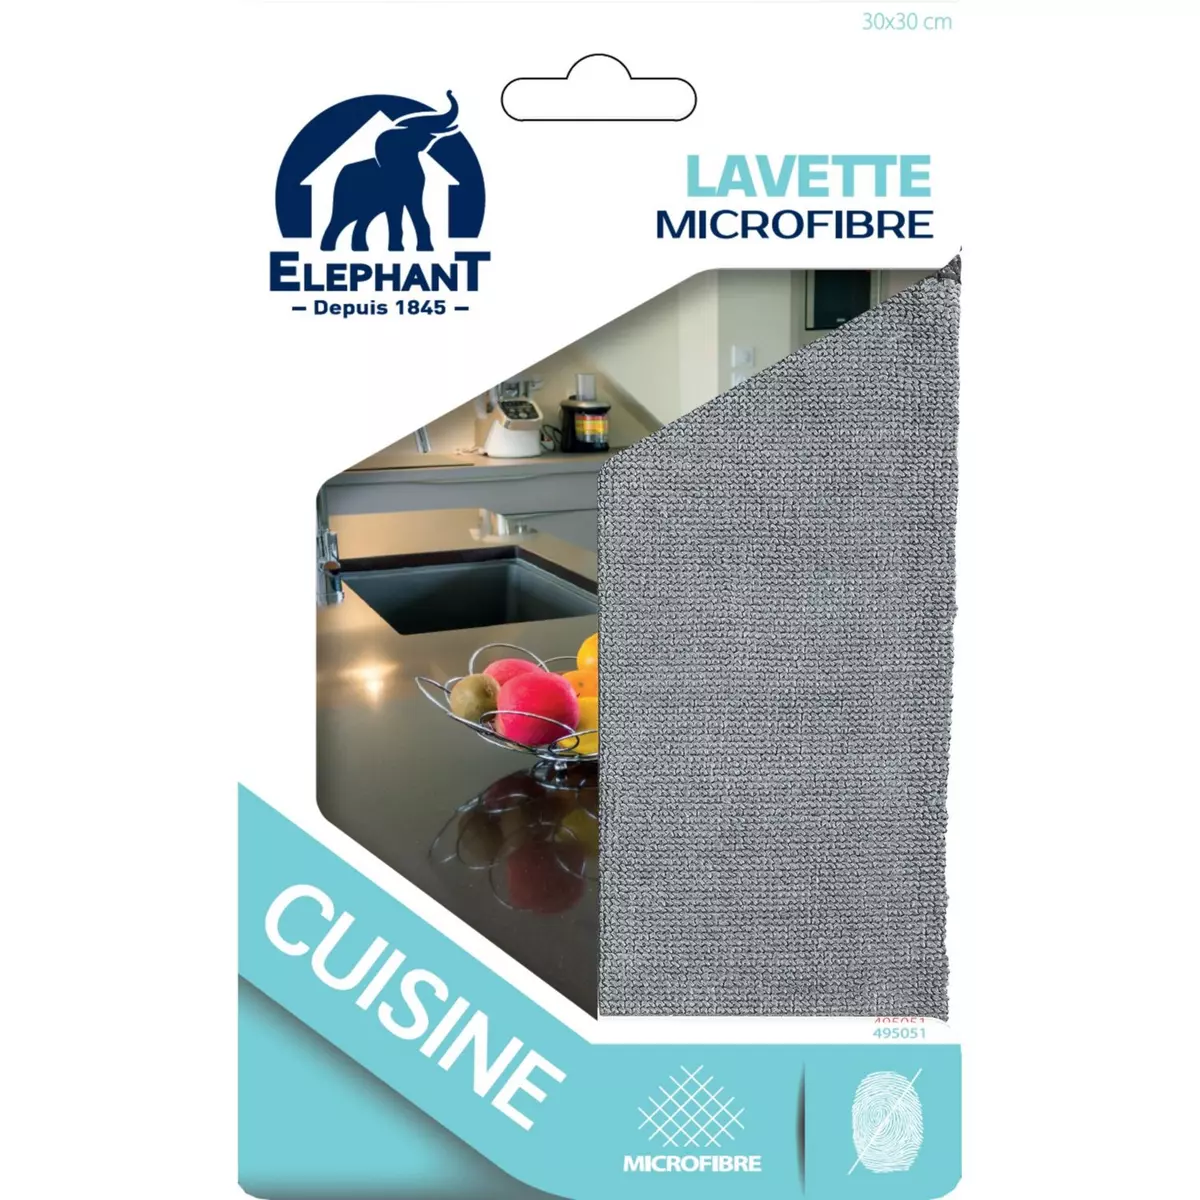 ELEPHANT Lavette microfibre cuisine 30x30cm 1 lavette